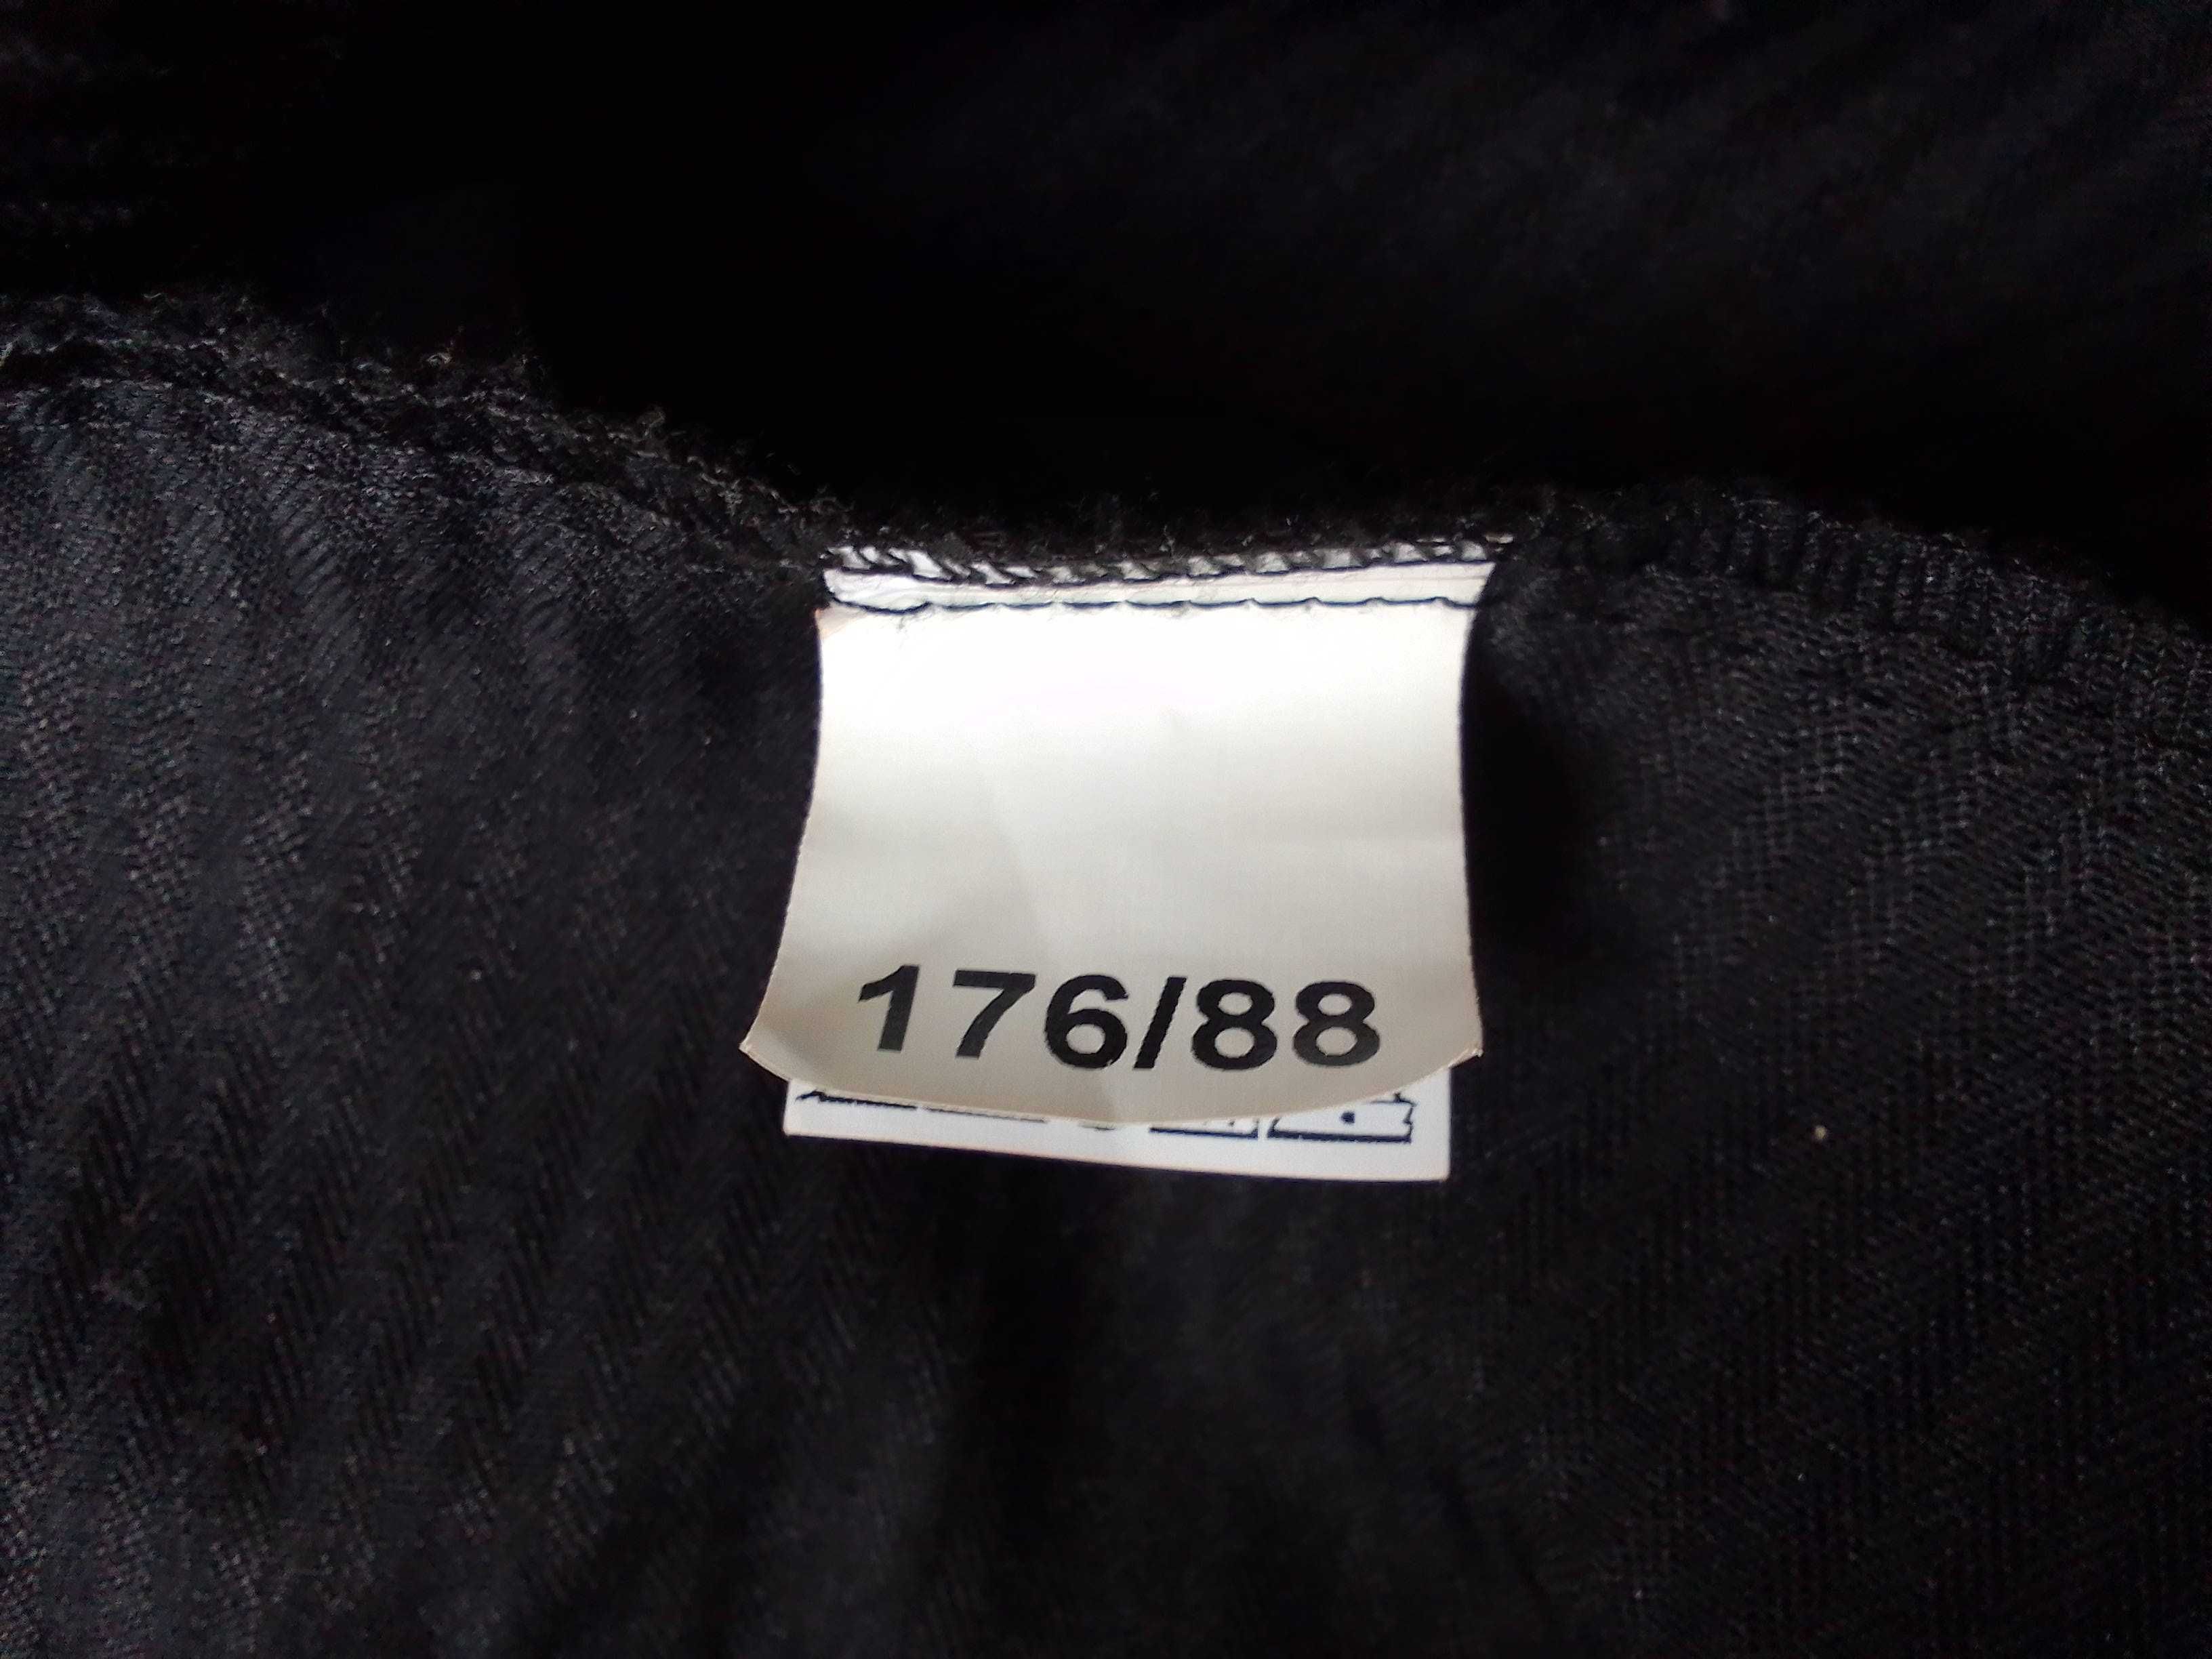 Spodnie męskie czarne garniturowe rozm. 176/88 . L